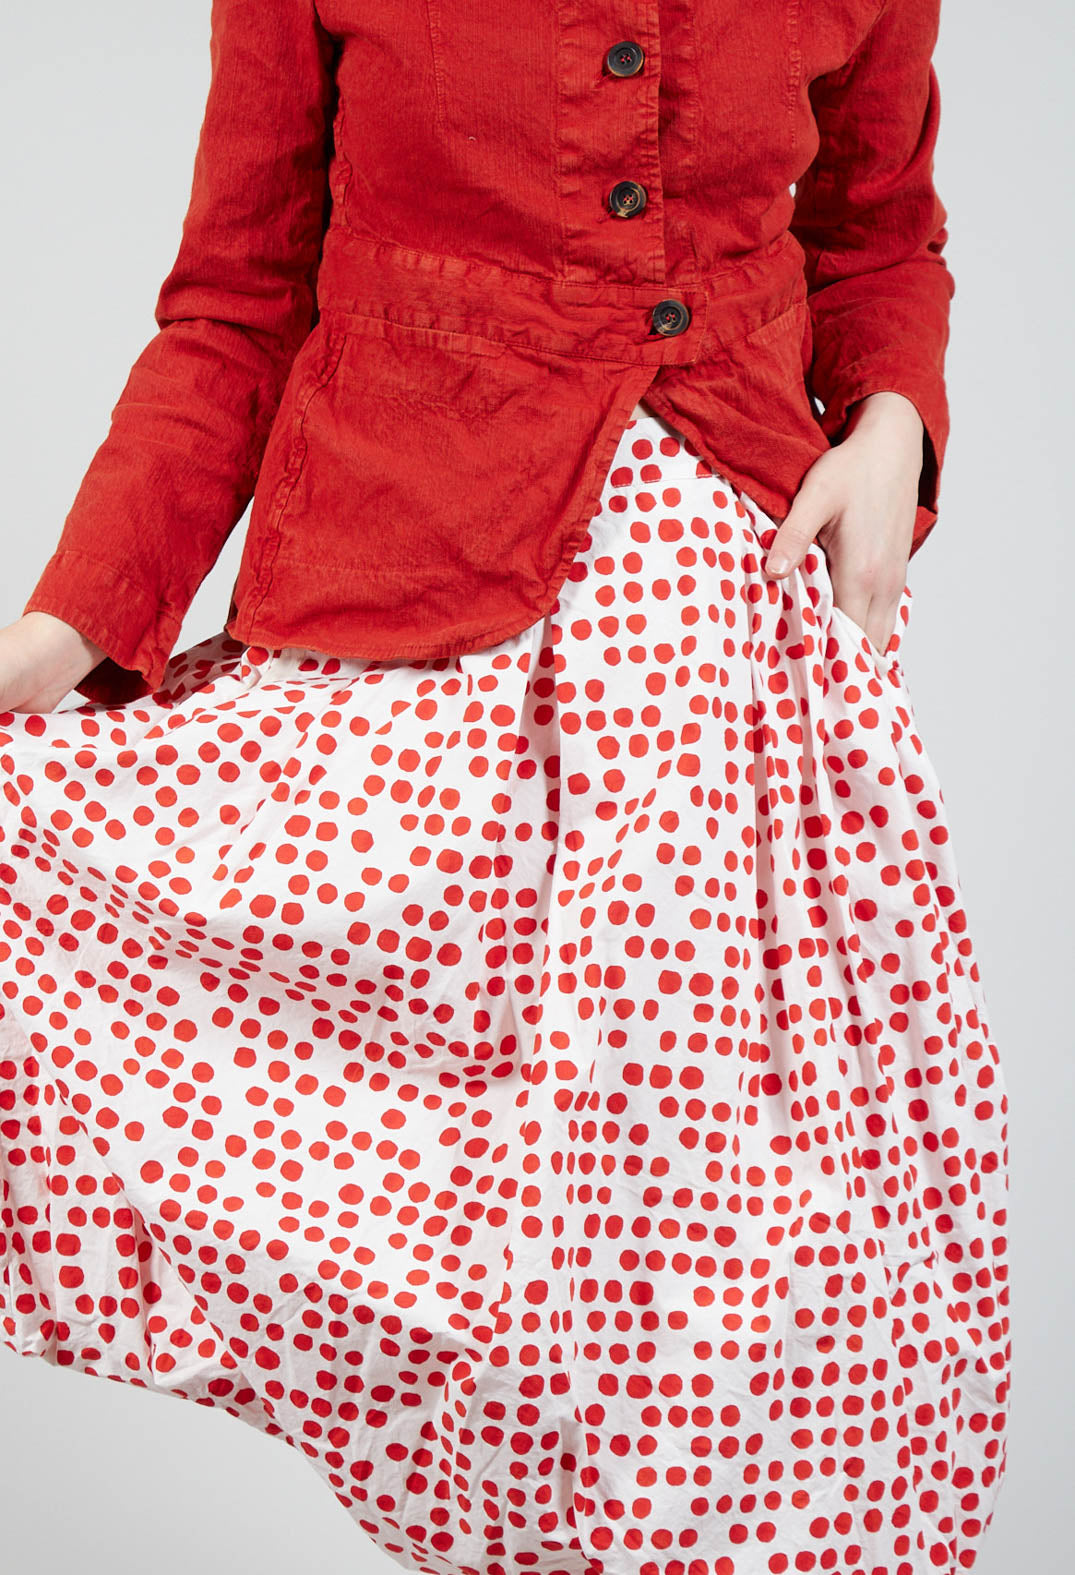 Jamila Skirt in Red Dot Print